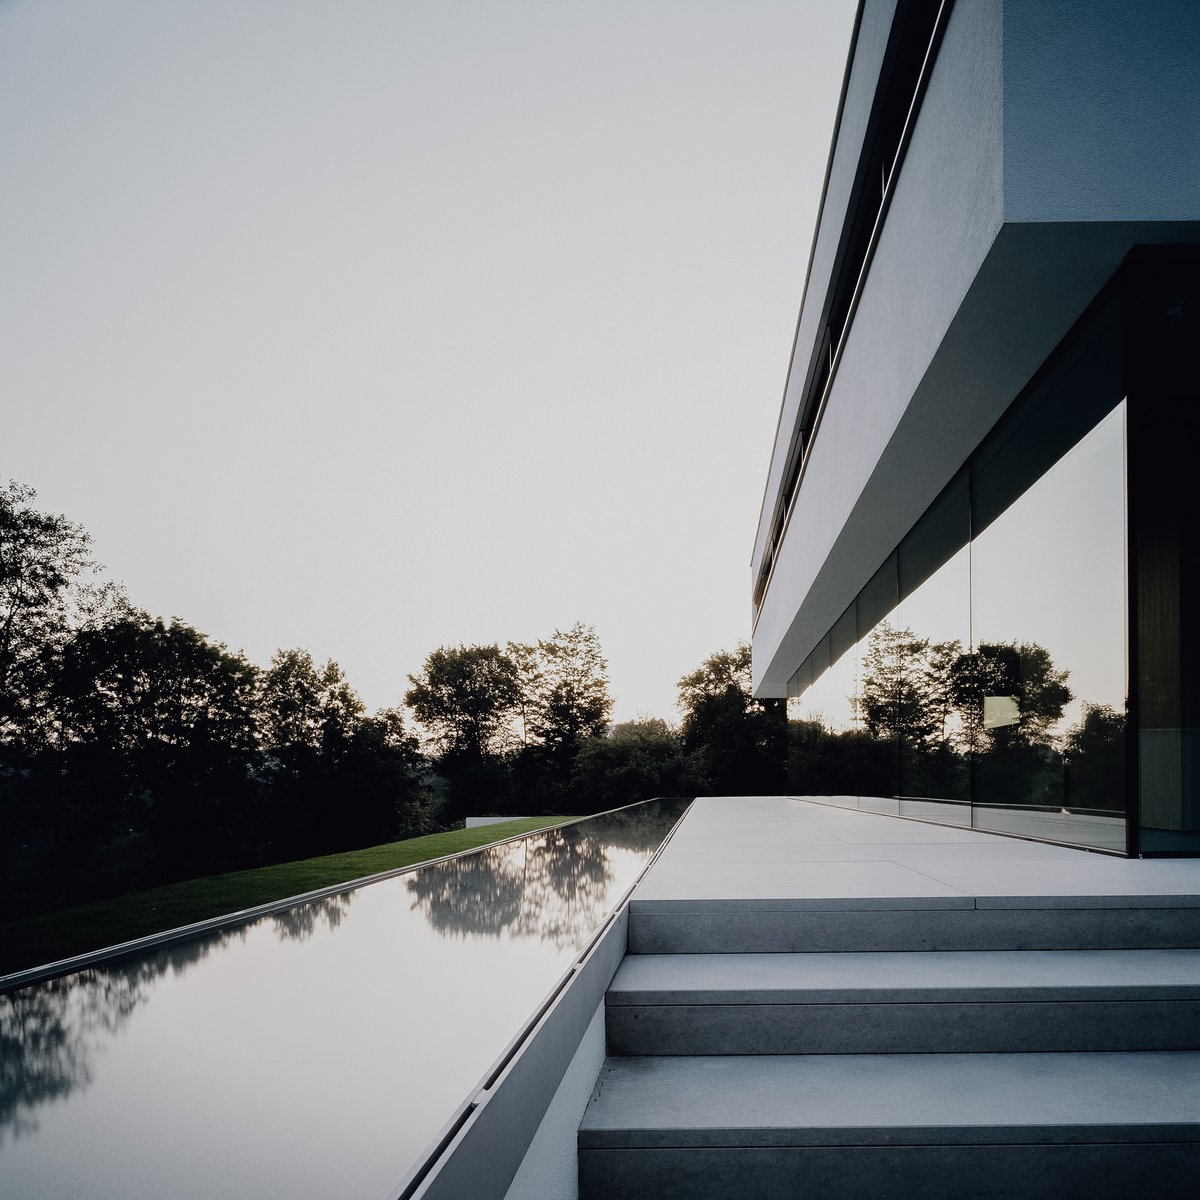 In harmony with nature: Villa Philipp.
.
.
#architecture #villa #glassfacade #facade #glazing #framelessglazing #nature #landscapedesign #hohenlohe #waldenburg #villaphilipp #annaphilipp #philipparchitekten